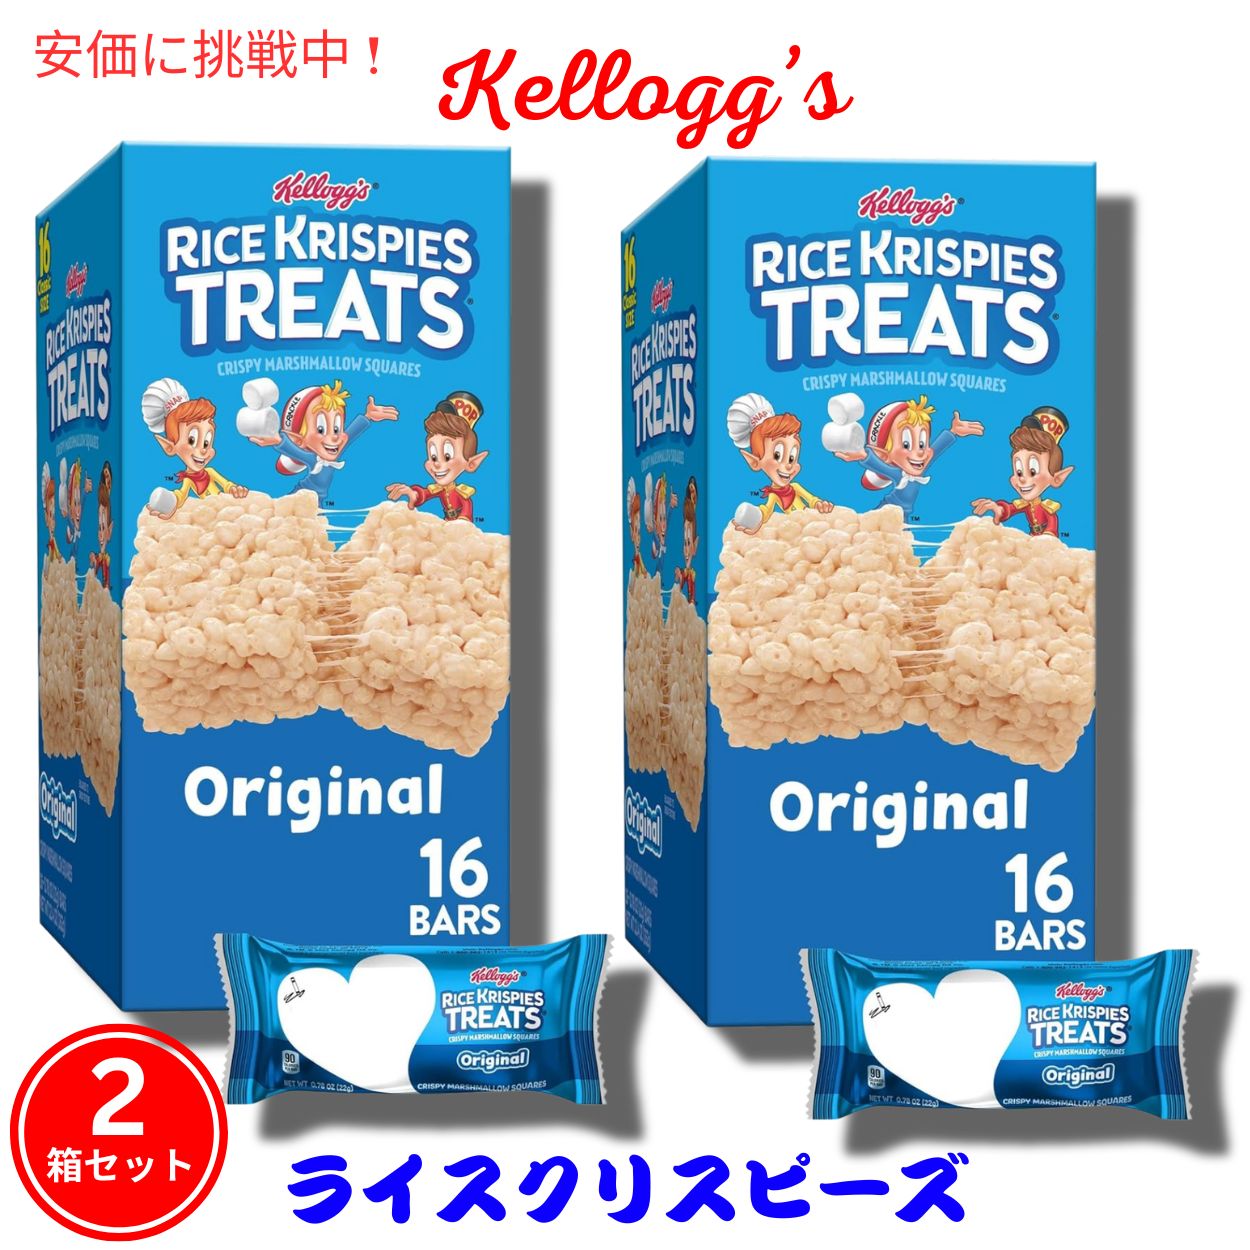 【2箱セット】Kellogg's ケロッグ ライスクリスピートリーツ オリジナル 16個入り x 2箱 Rice Krispies Treats